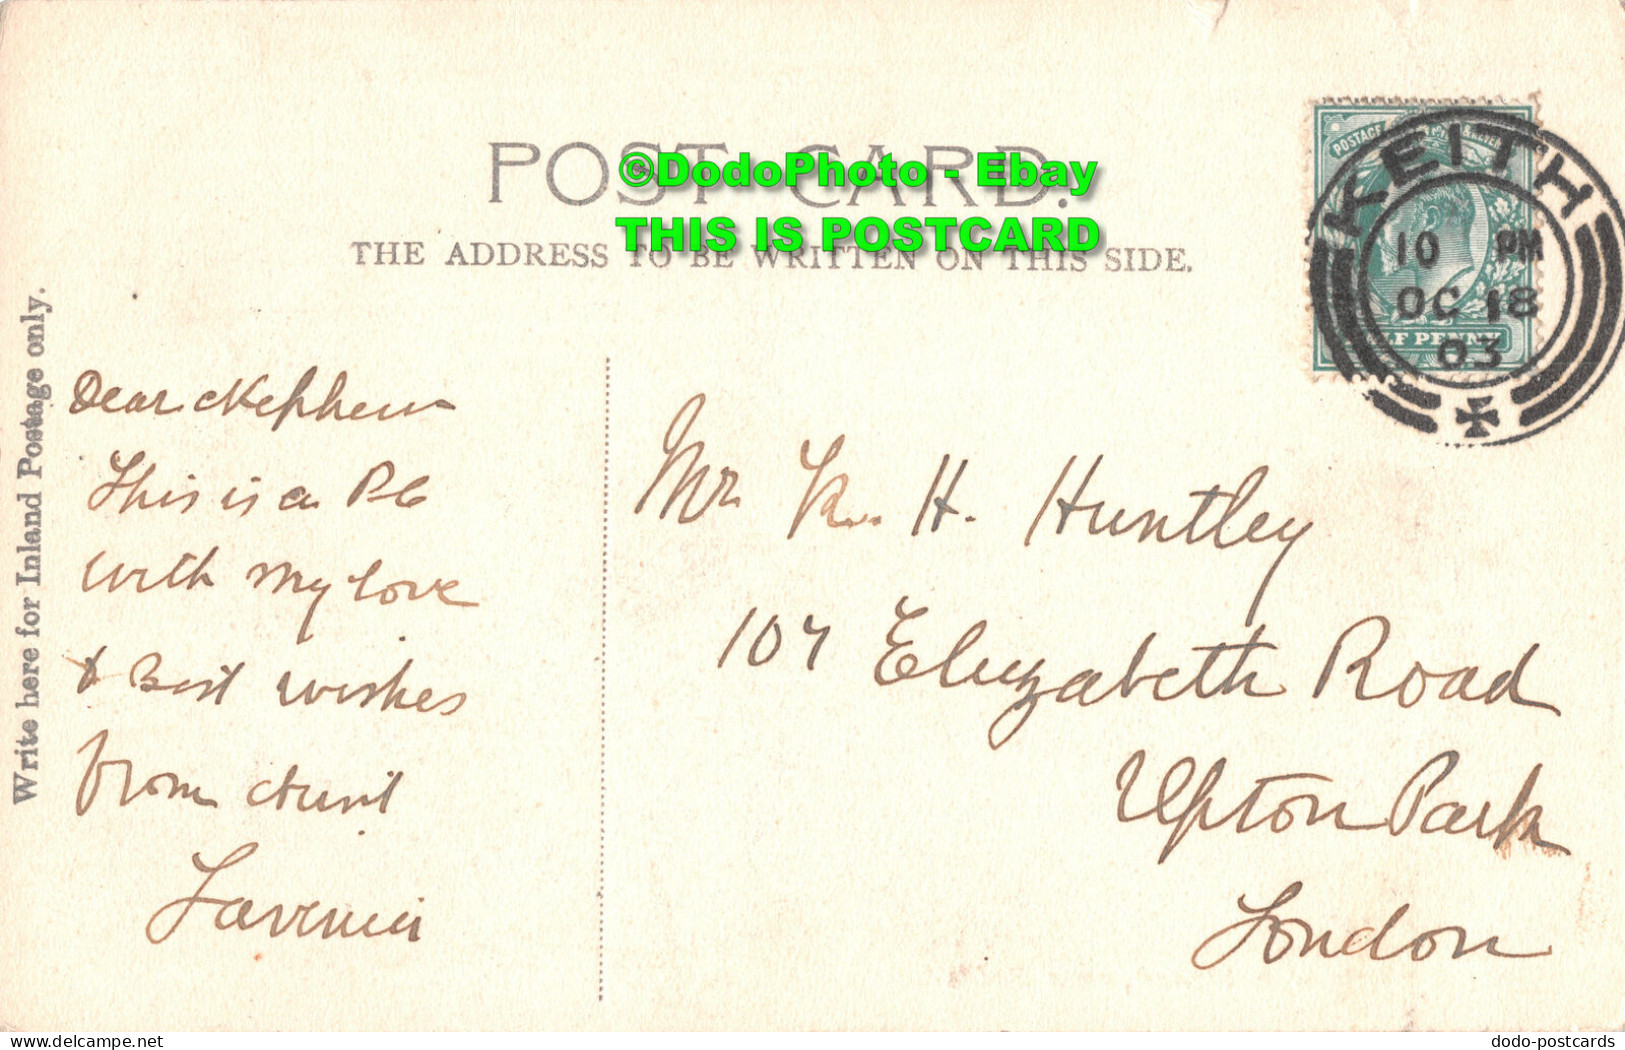 R344892 Auld Brig O Bridgend Near Keith. 1903 - Monde